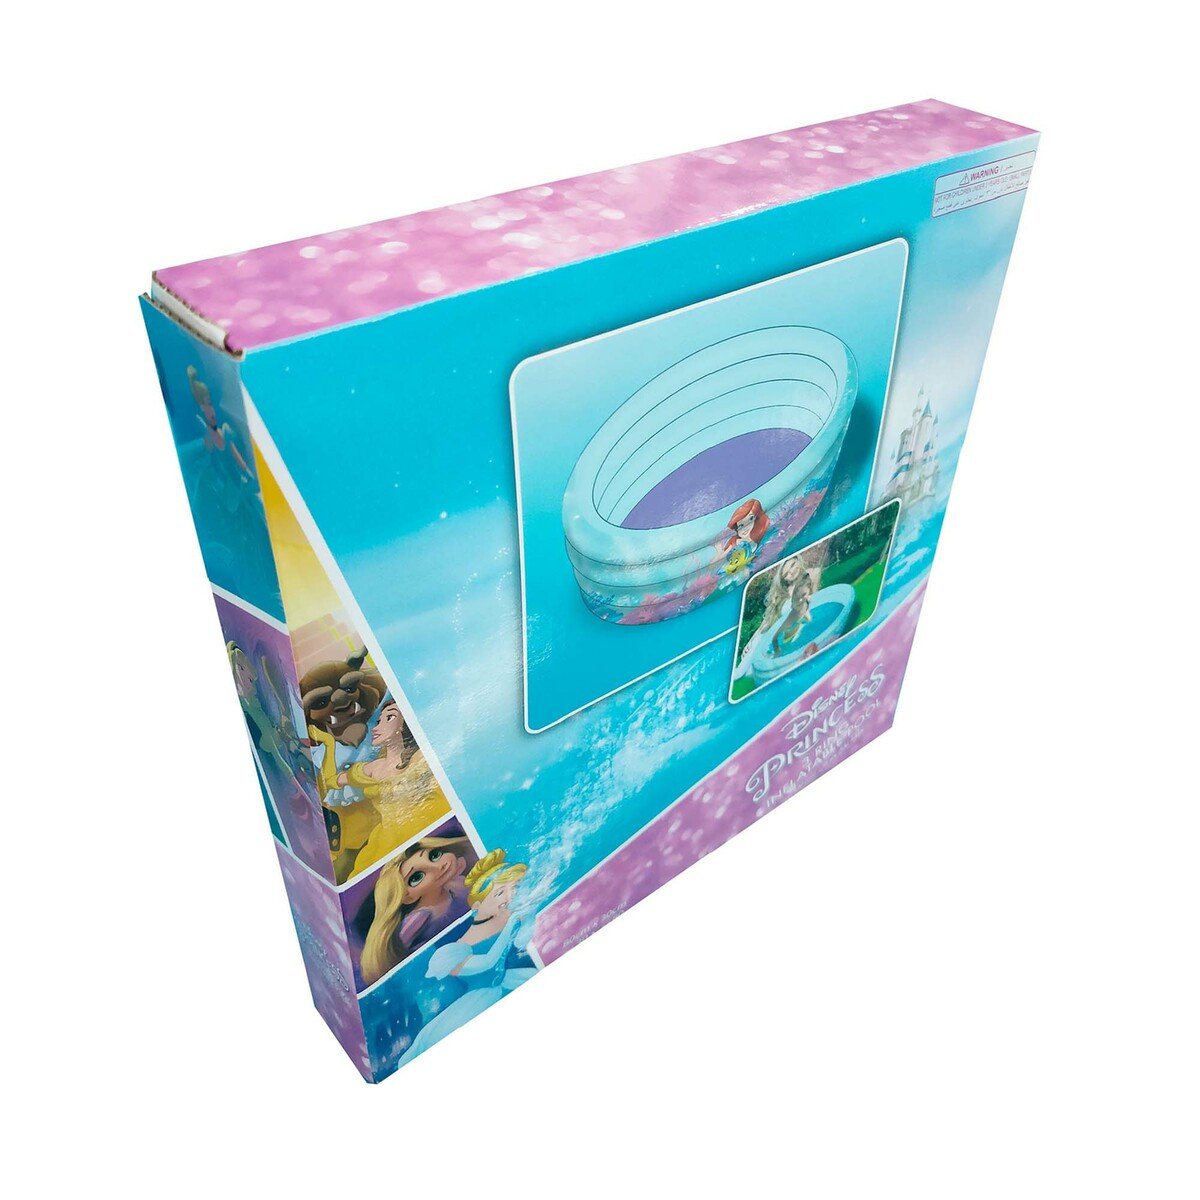 ديزني برينسس حوض سباحة قابل للنفخ بطبعات للأطفال - متعدد الألوان TRHA6000